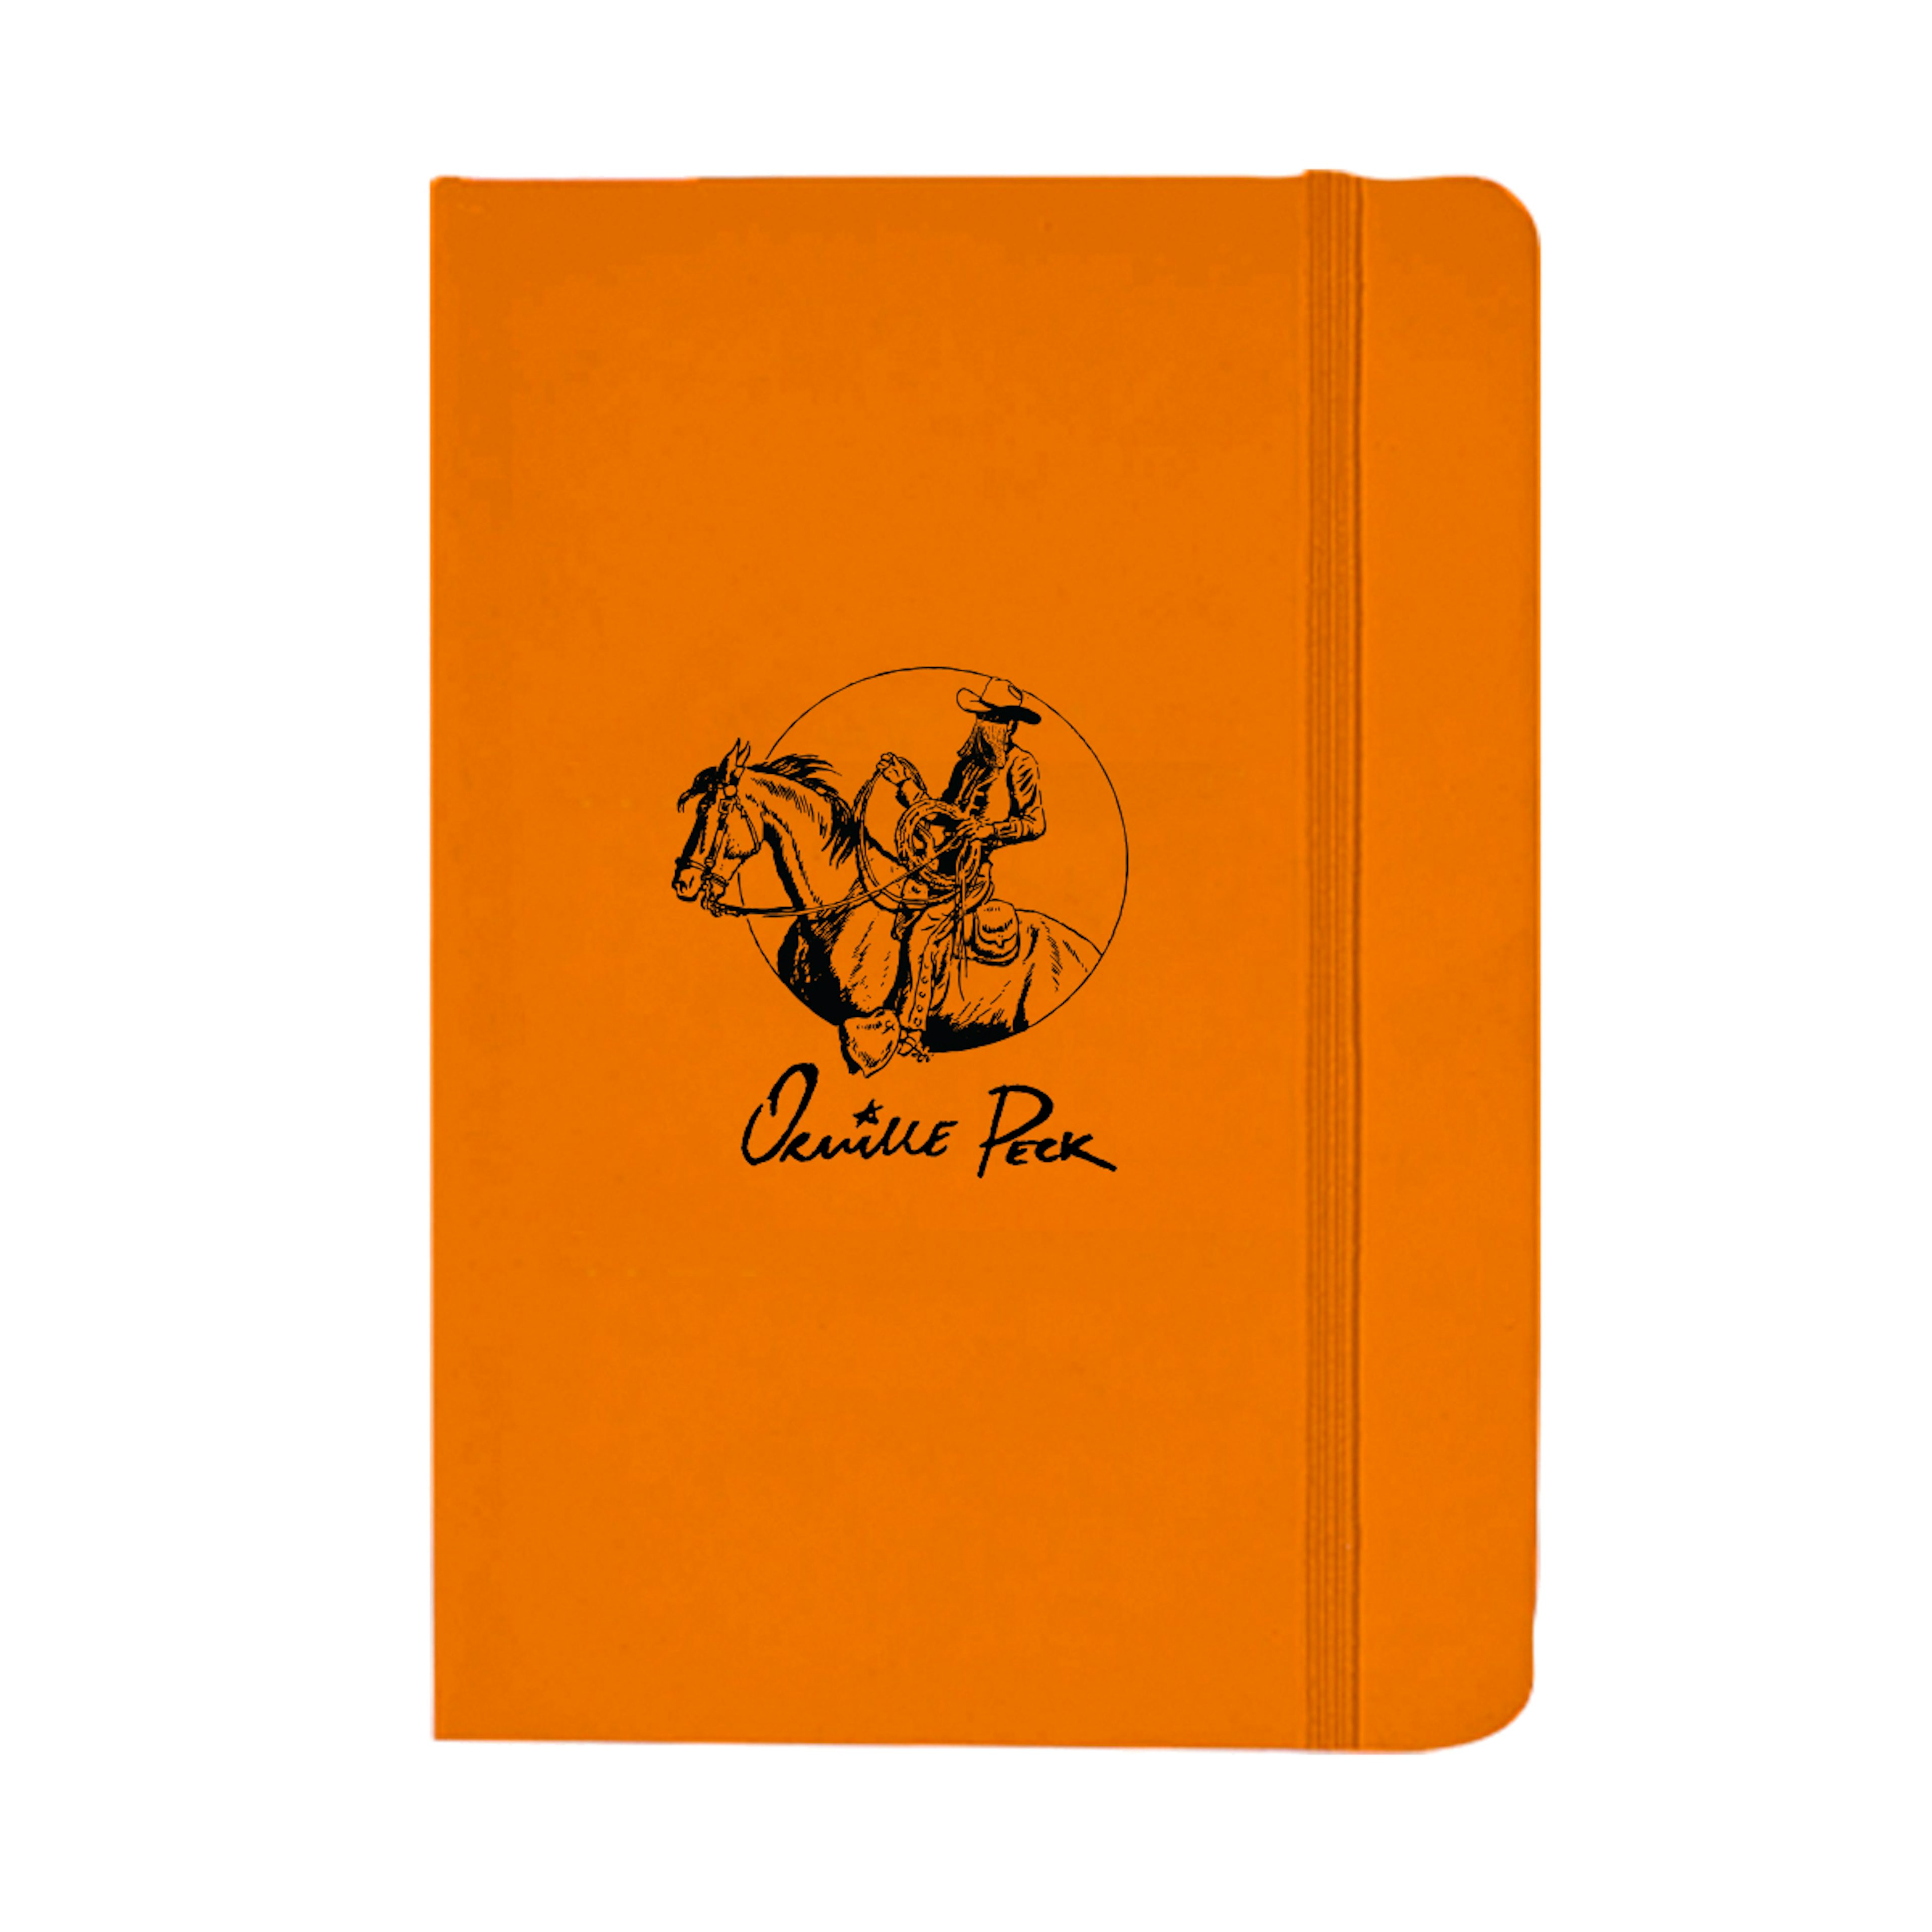 Orville Peck Wrangler Notebook